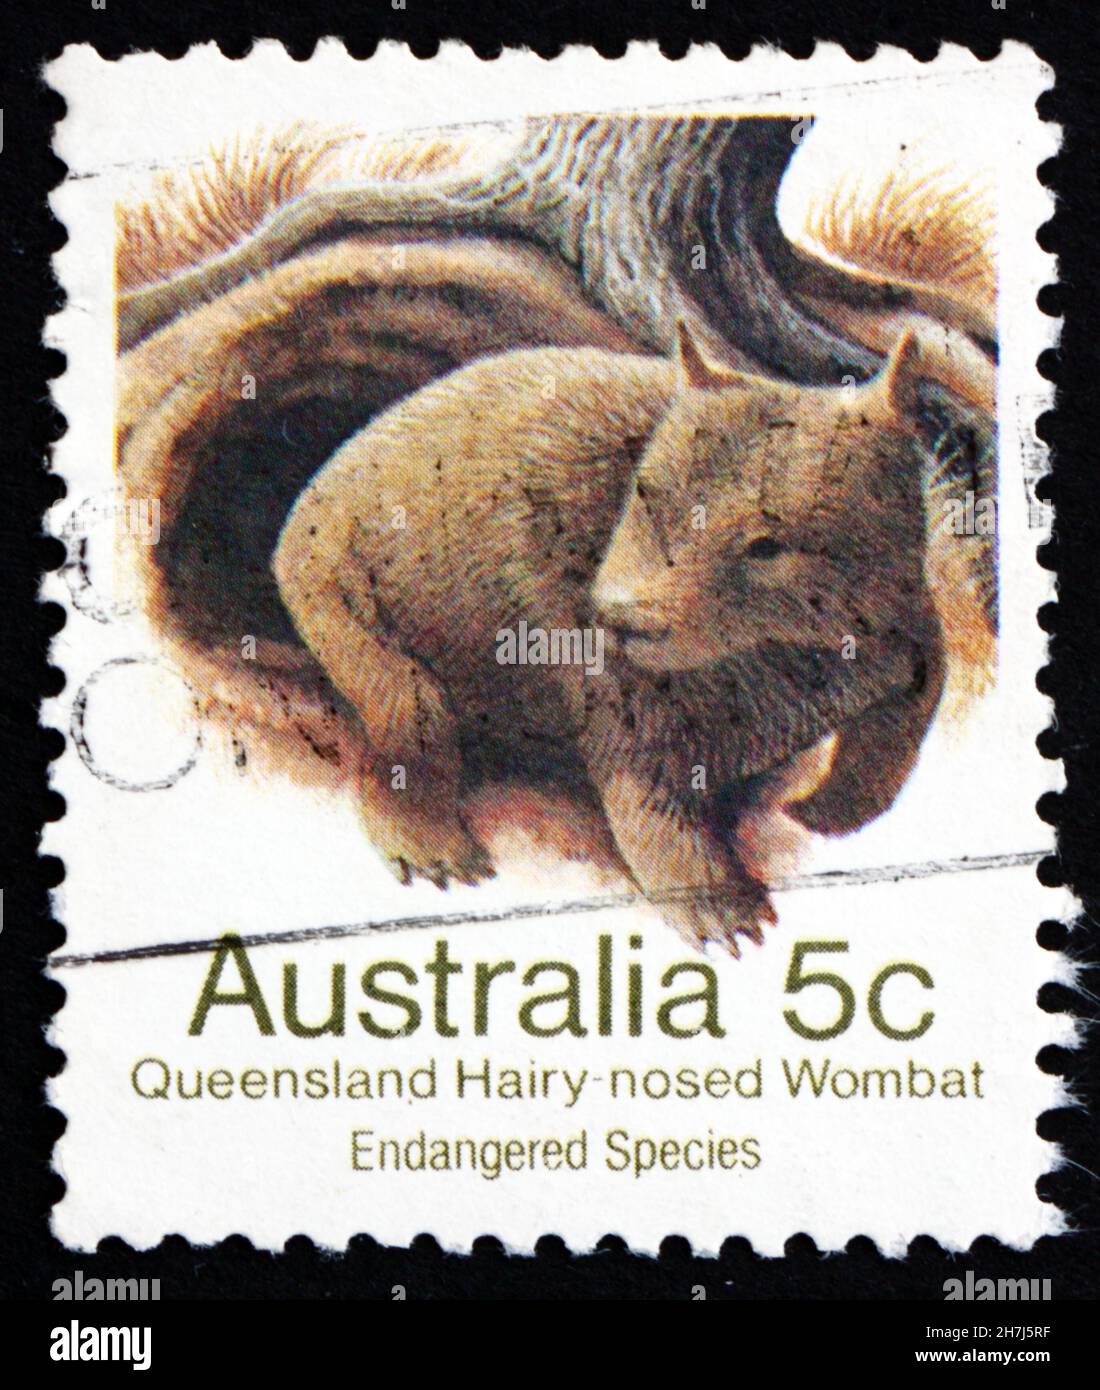 AUSTRALIEN - UM 1981: Eine in Australien gedruckte Marke zeigt Queensland Hairy-Nosed Wombat, Lasiorhinus Krefftii, Beuteltier, um 1981 Stockfoto